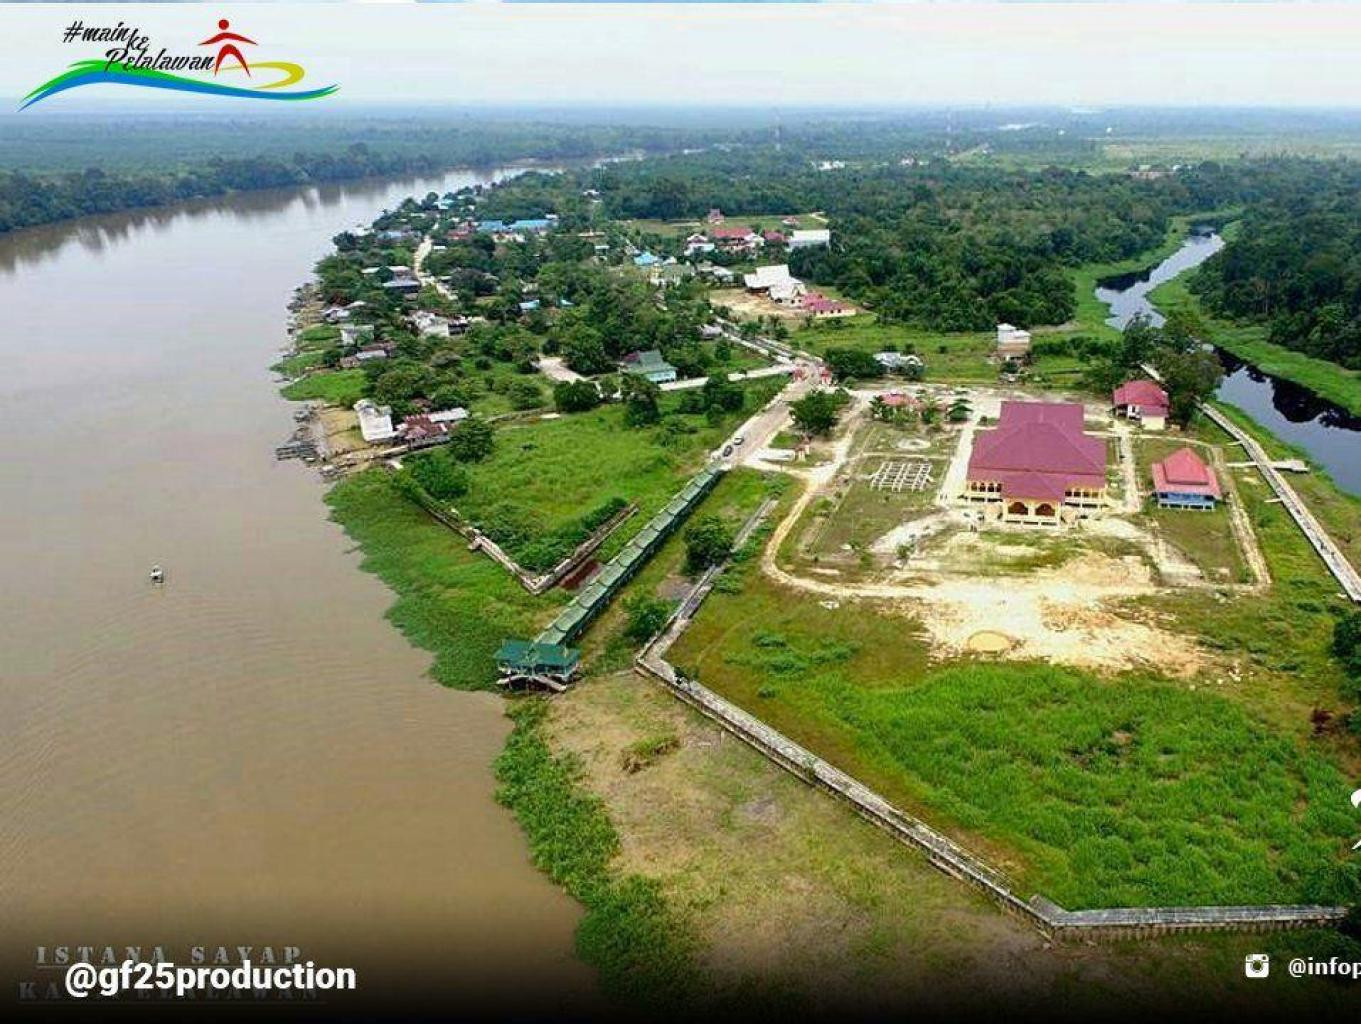 Menelusuri Desa Wisata Kampung Budaya Pelalawan Riau, dari Istana Sayap Hingga Sungai Hulu Bandar